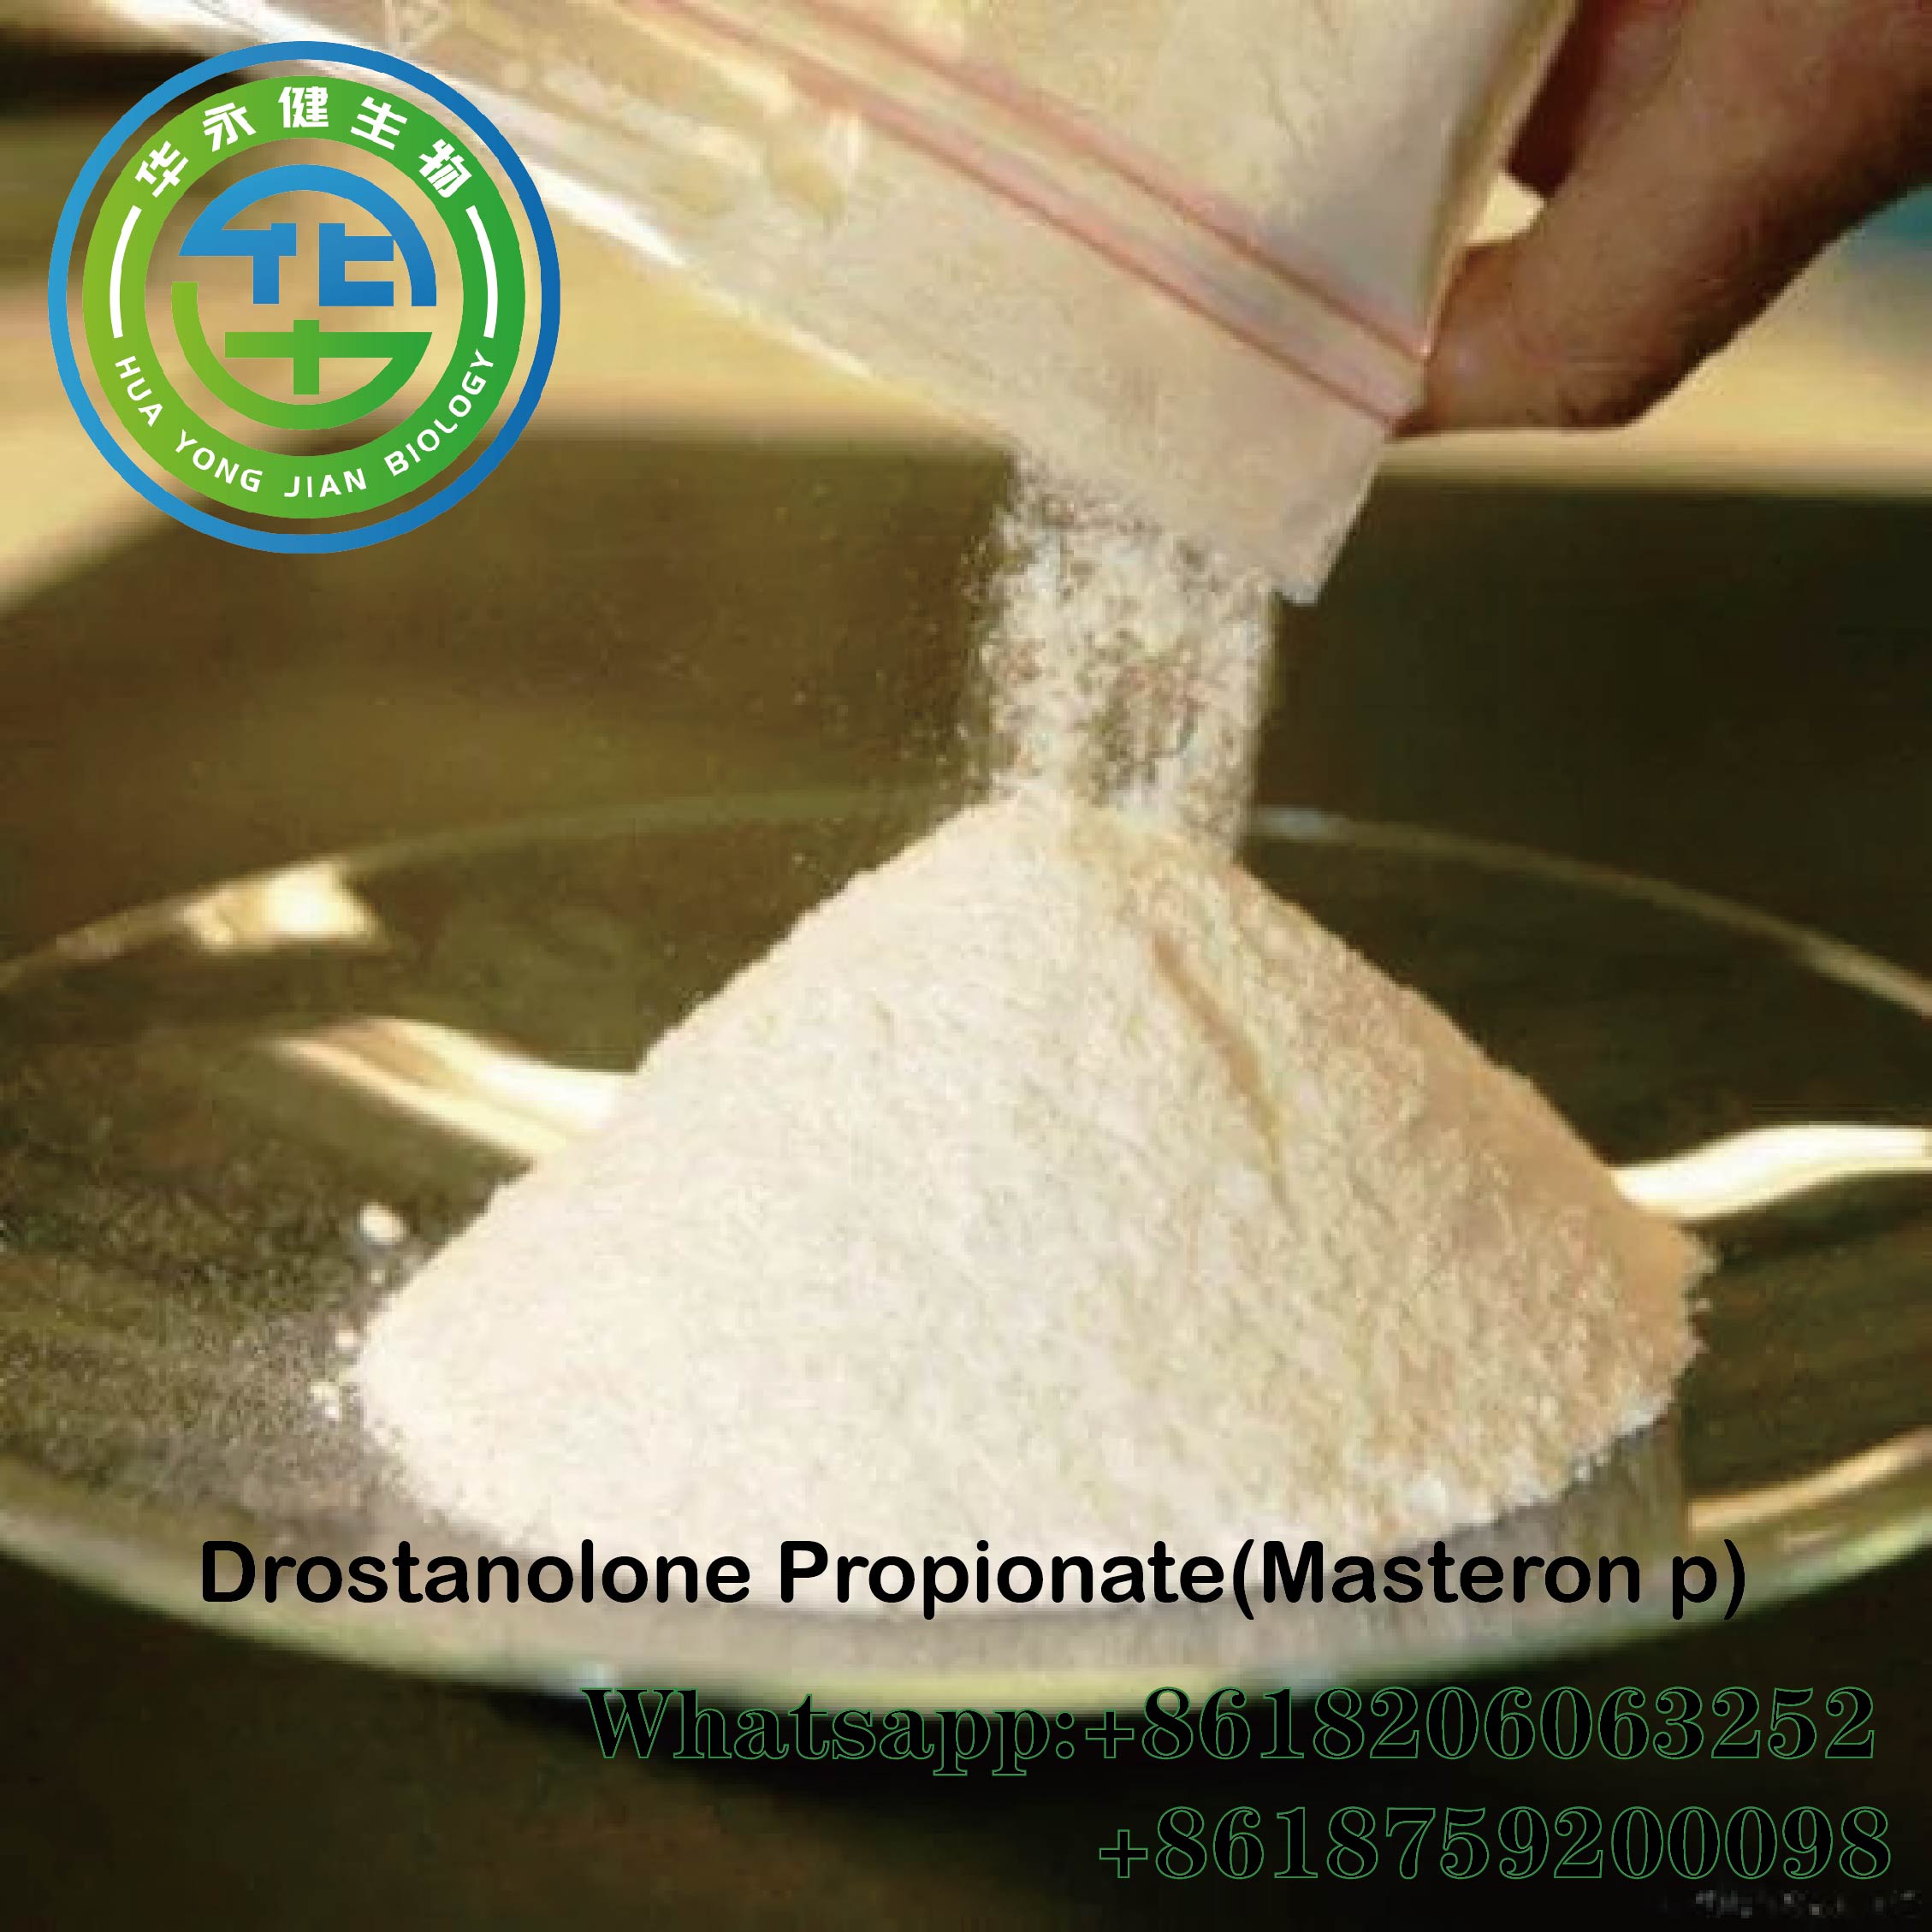 Anabolics Drostanolone Propionate Cas 521-12-0 Raw Steroids Powder Masteron p nga adunay Luwas nga Paghatud sa Paypal Gidawat nga Gipili nga Imahe